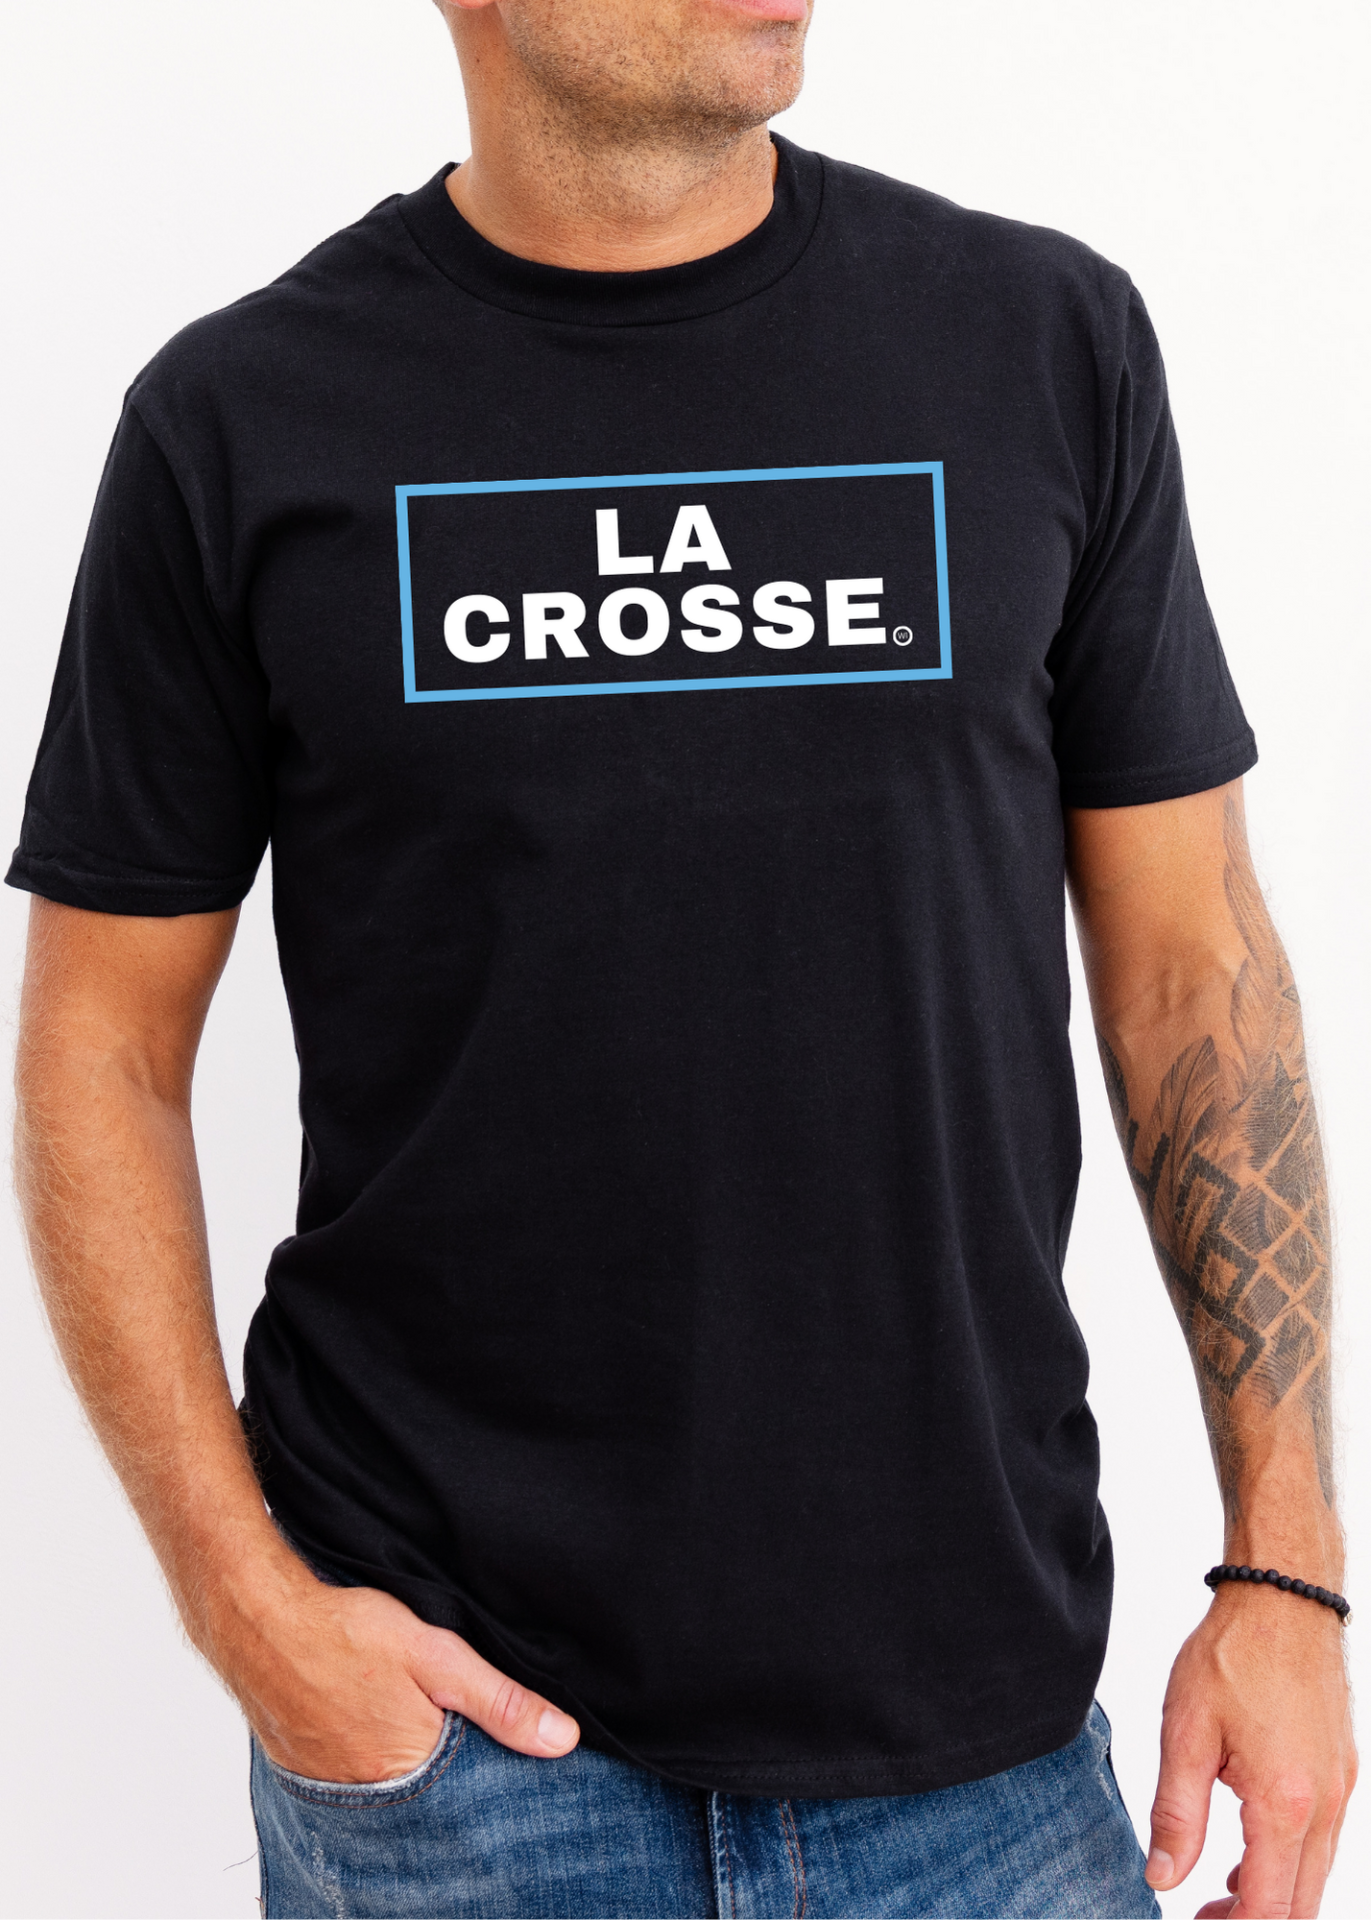 La Crosse in a blue box on a black shirt